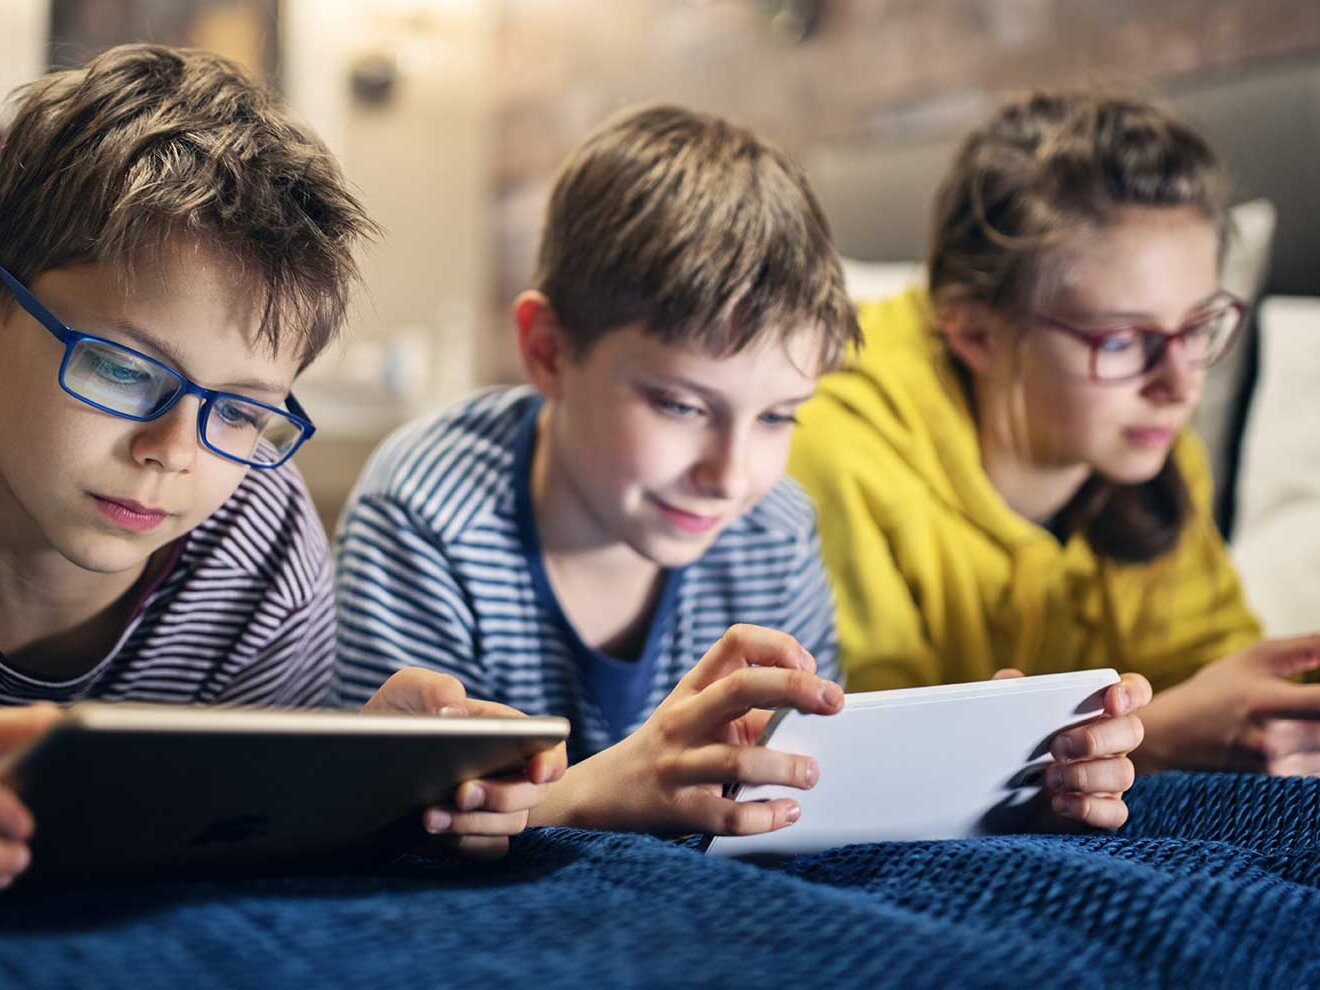 Drei Jugendliche liegen auf einem Bett und schauen auf verschiedene elektronische Geräte.